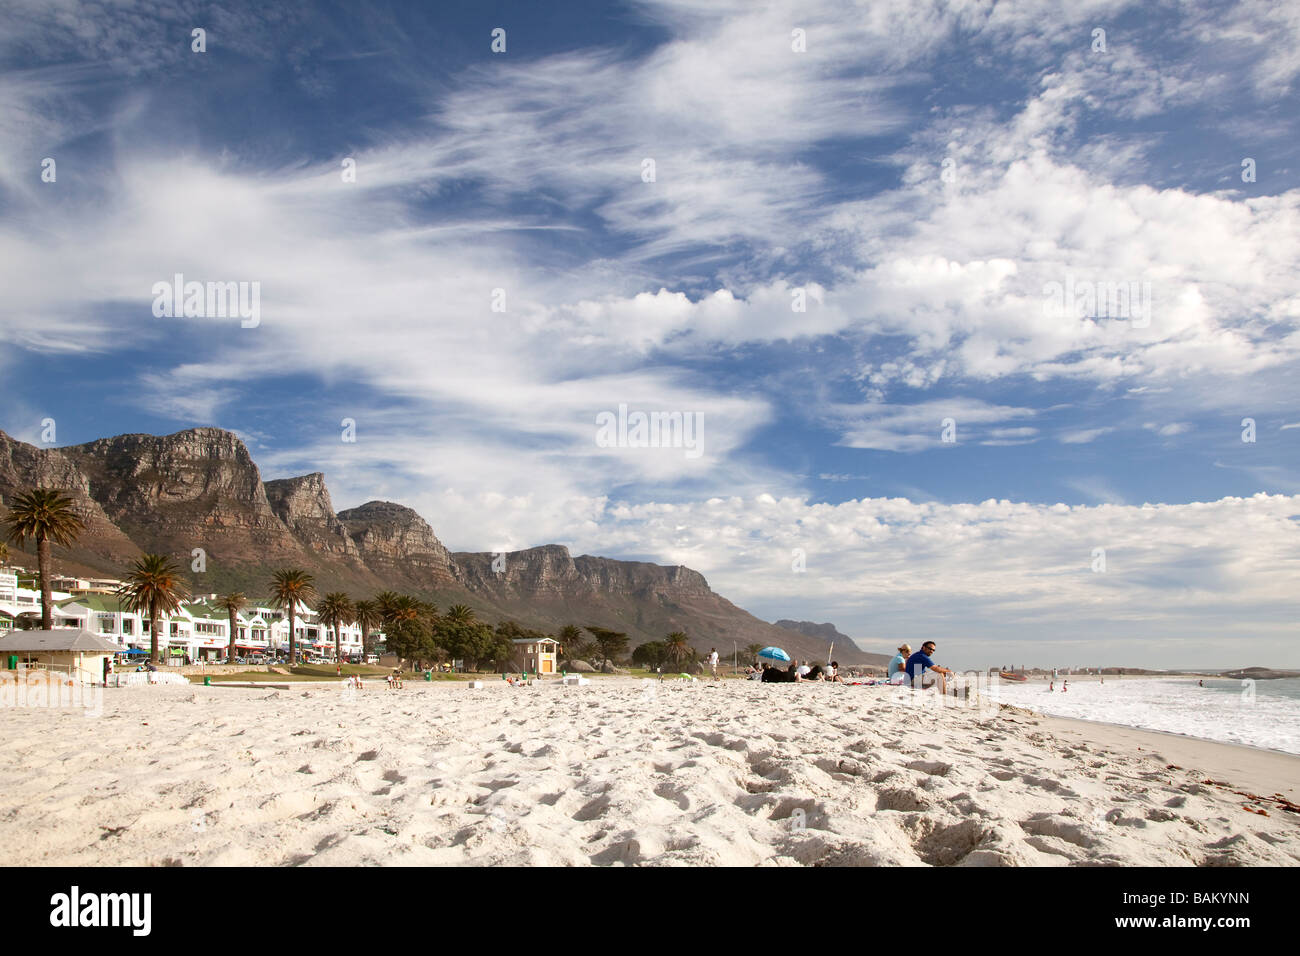 Menschen am Strand von Camps Bay, Cape Town, Südafrika Stockfoto